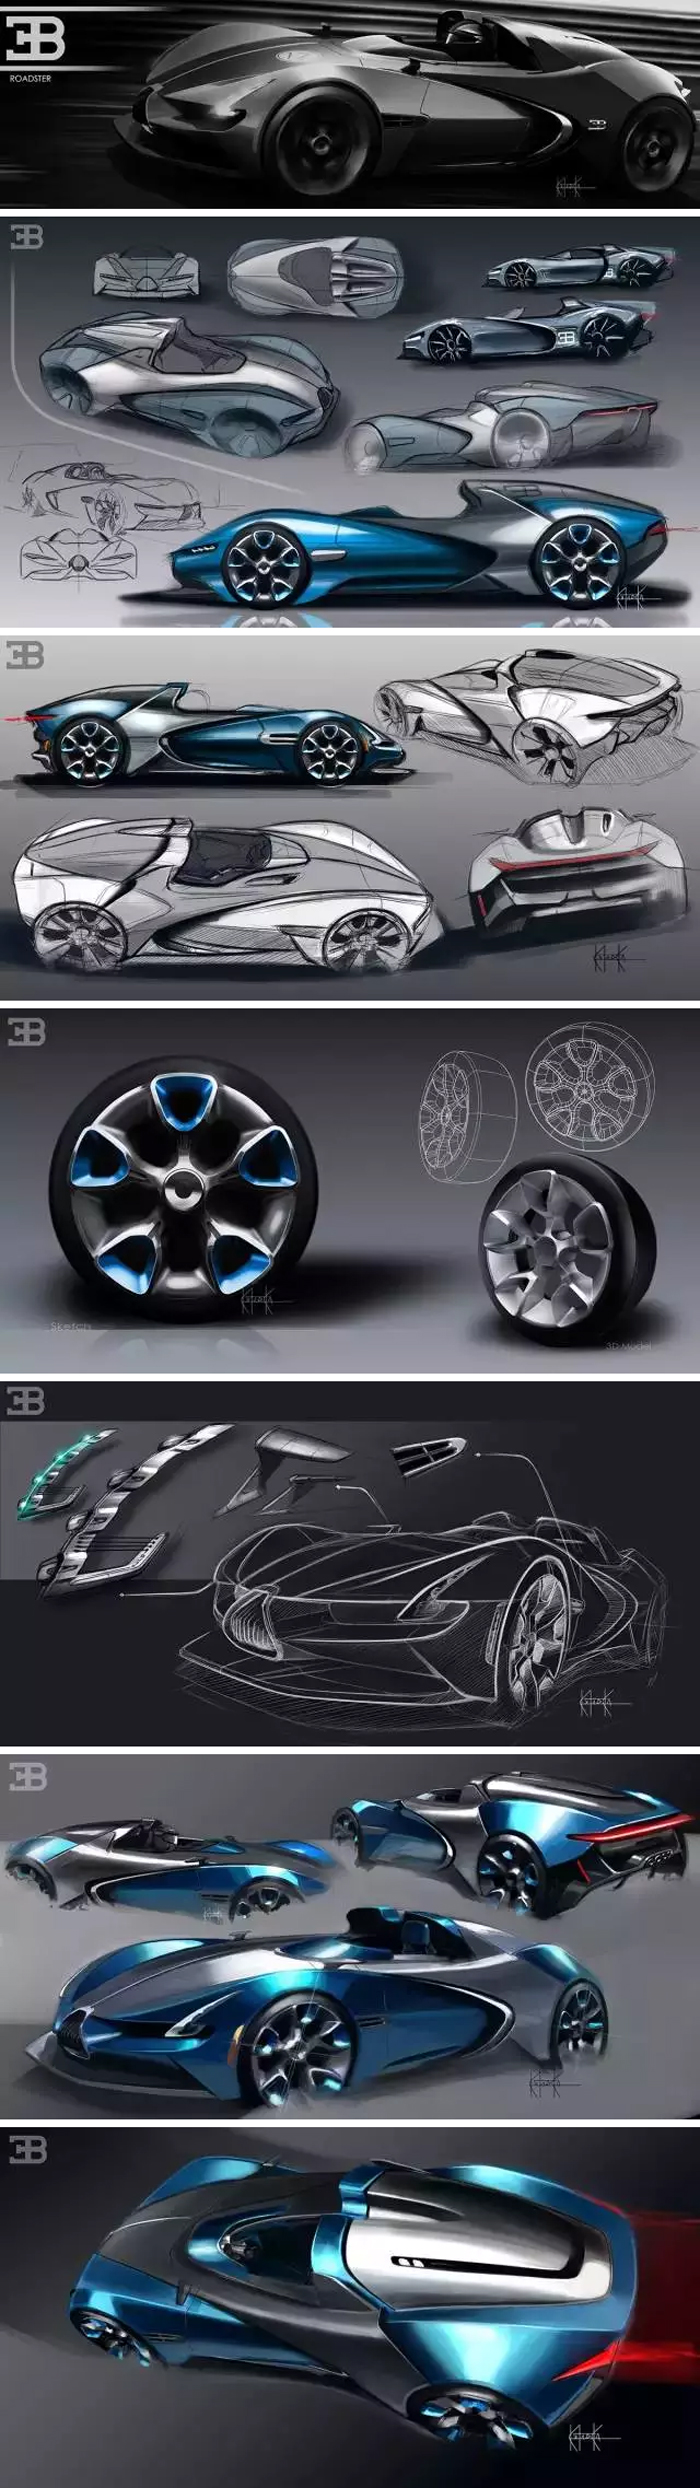 Bugatti-Roadster.jpg